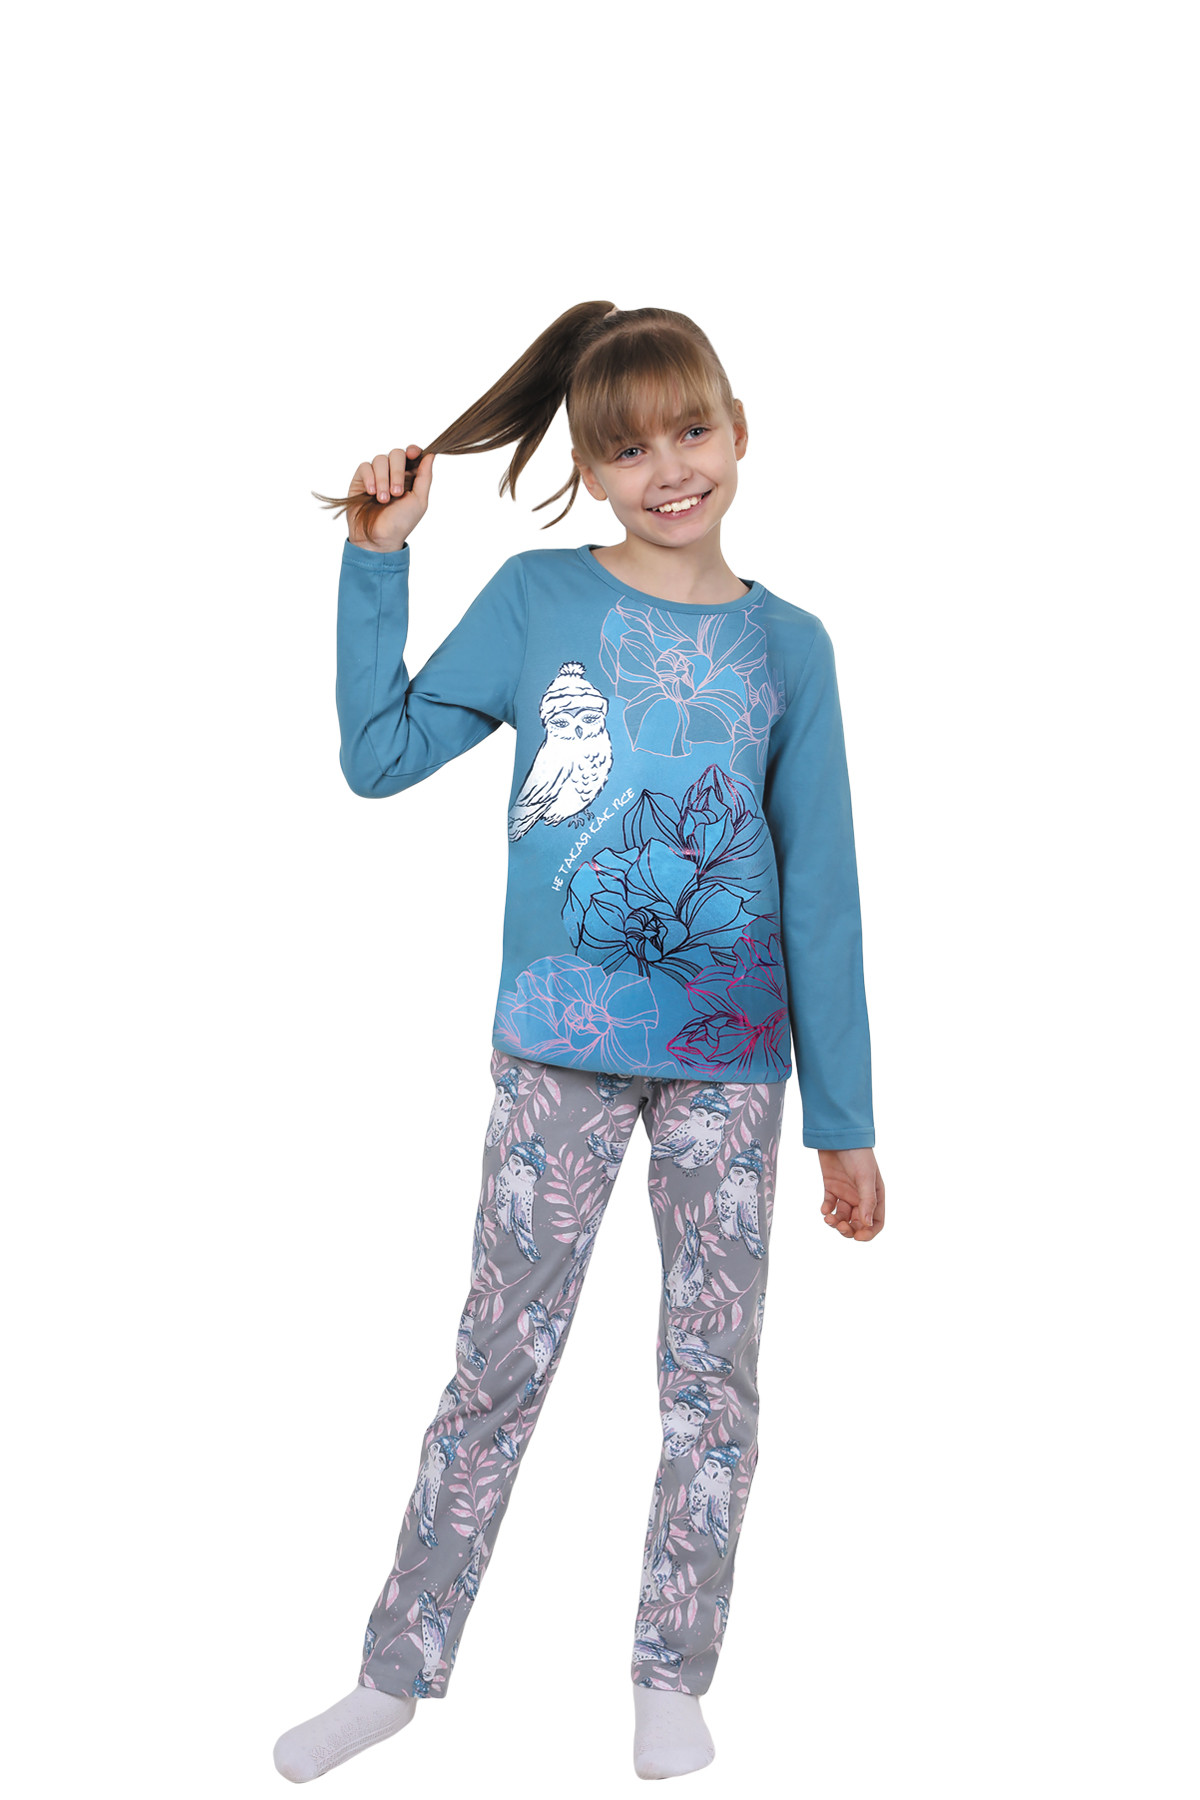 Детская пижама Совушка Цвет: Петрольный (11 лет), размер 11 лет